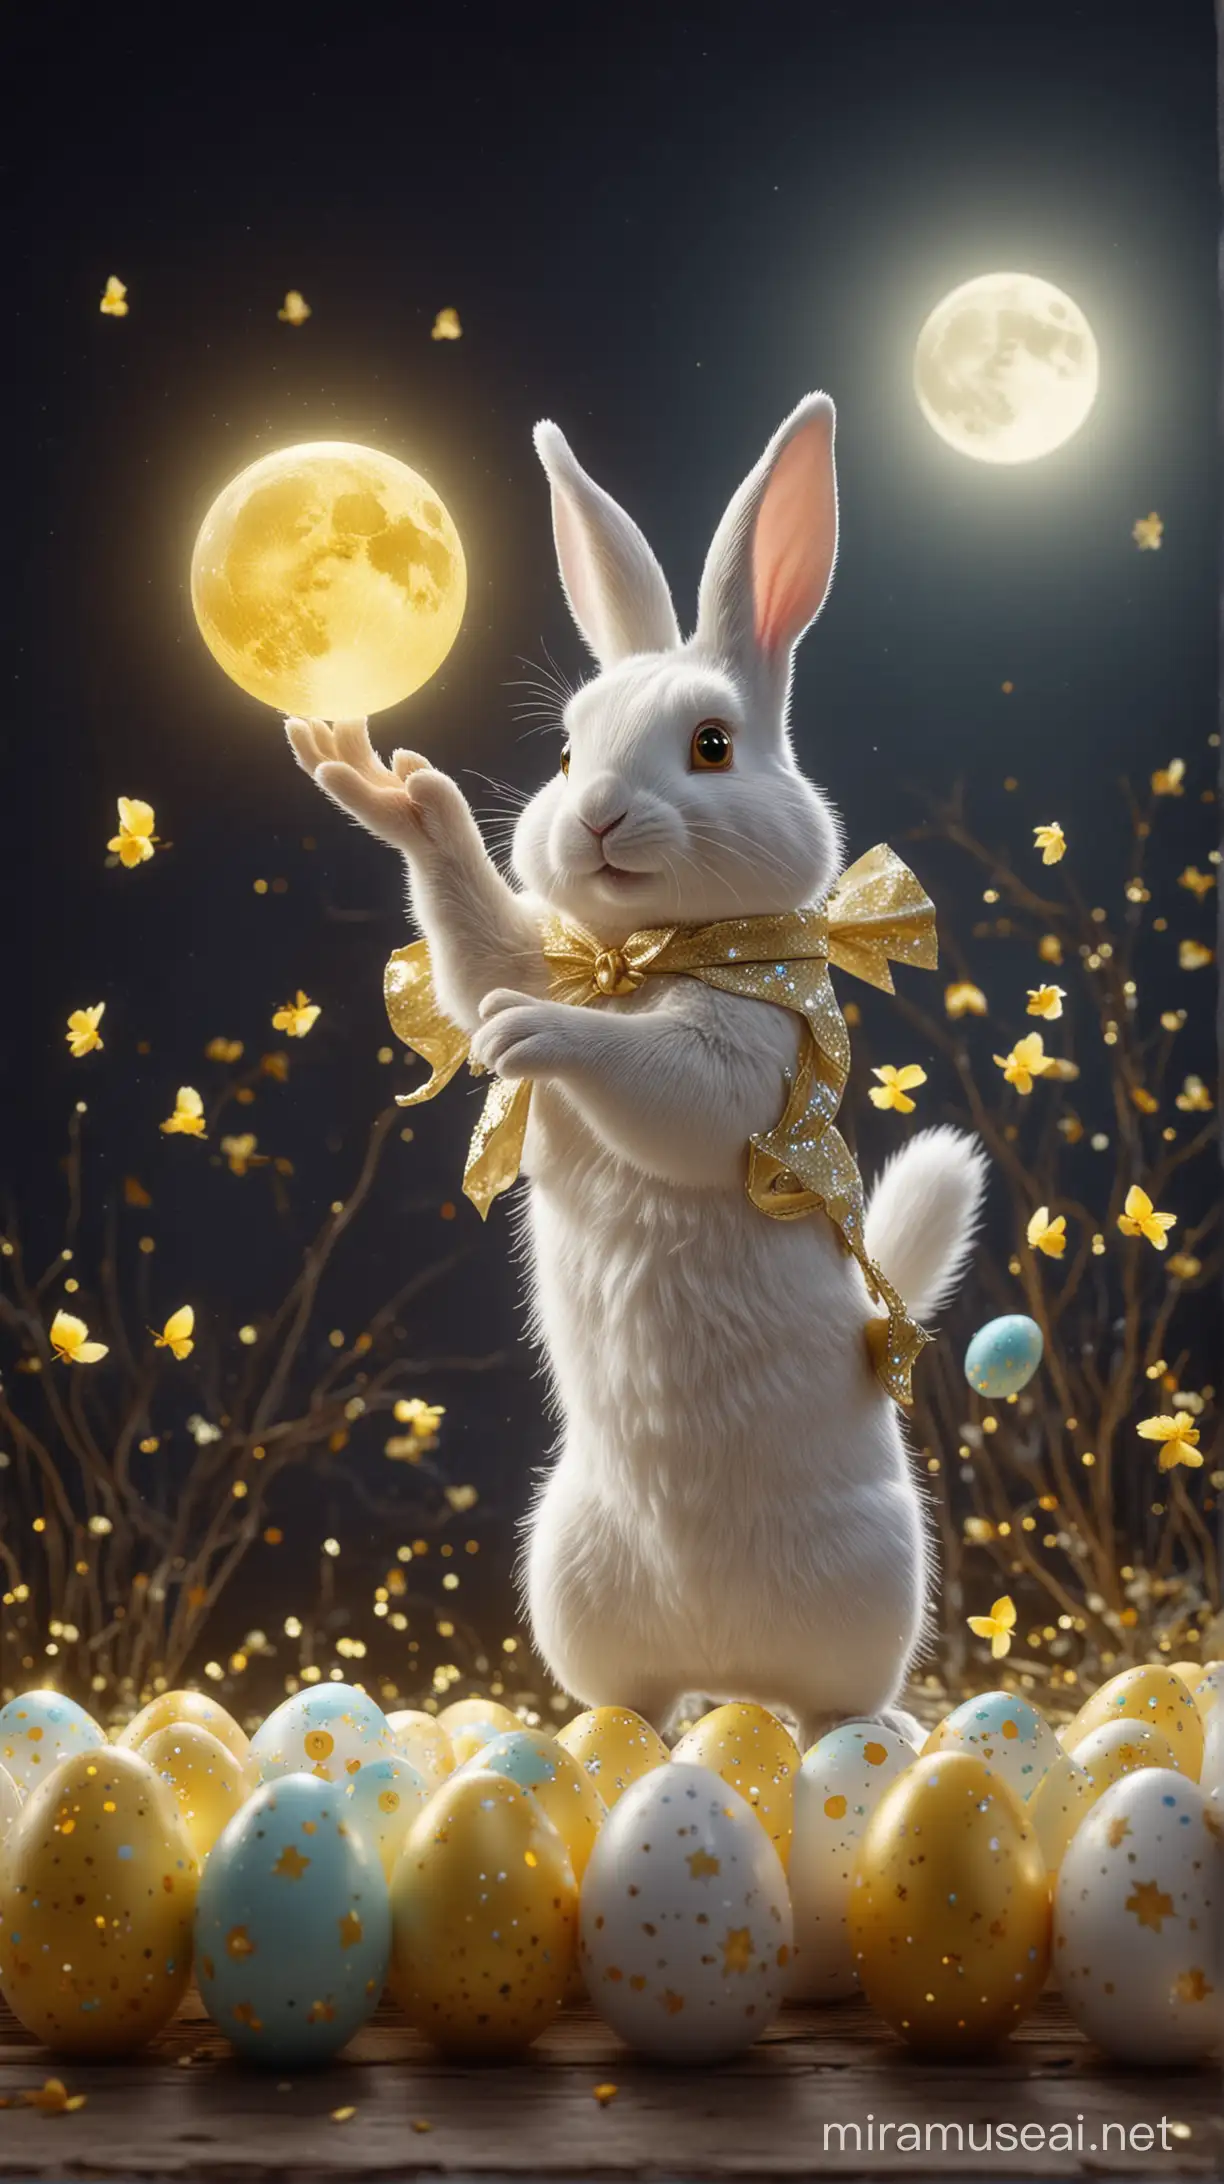 Shining White Rabbit Holding Glittering Easter Eggs under Midnight Moonlight